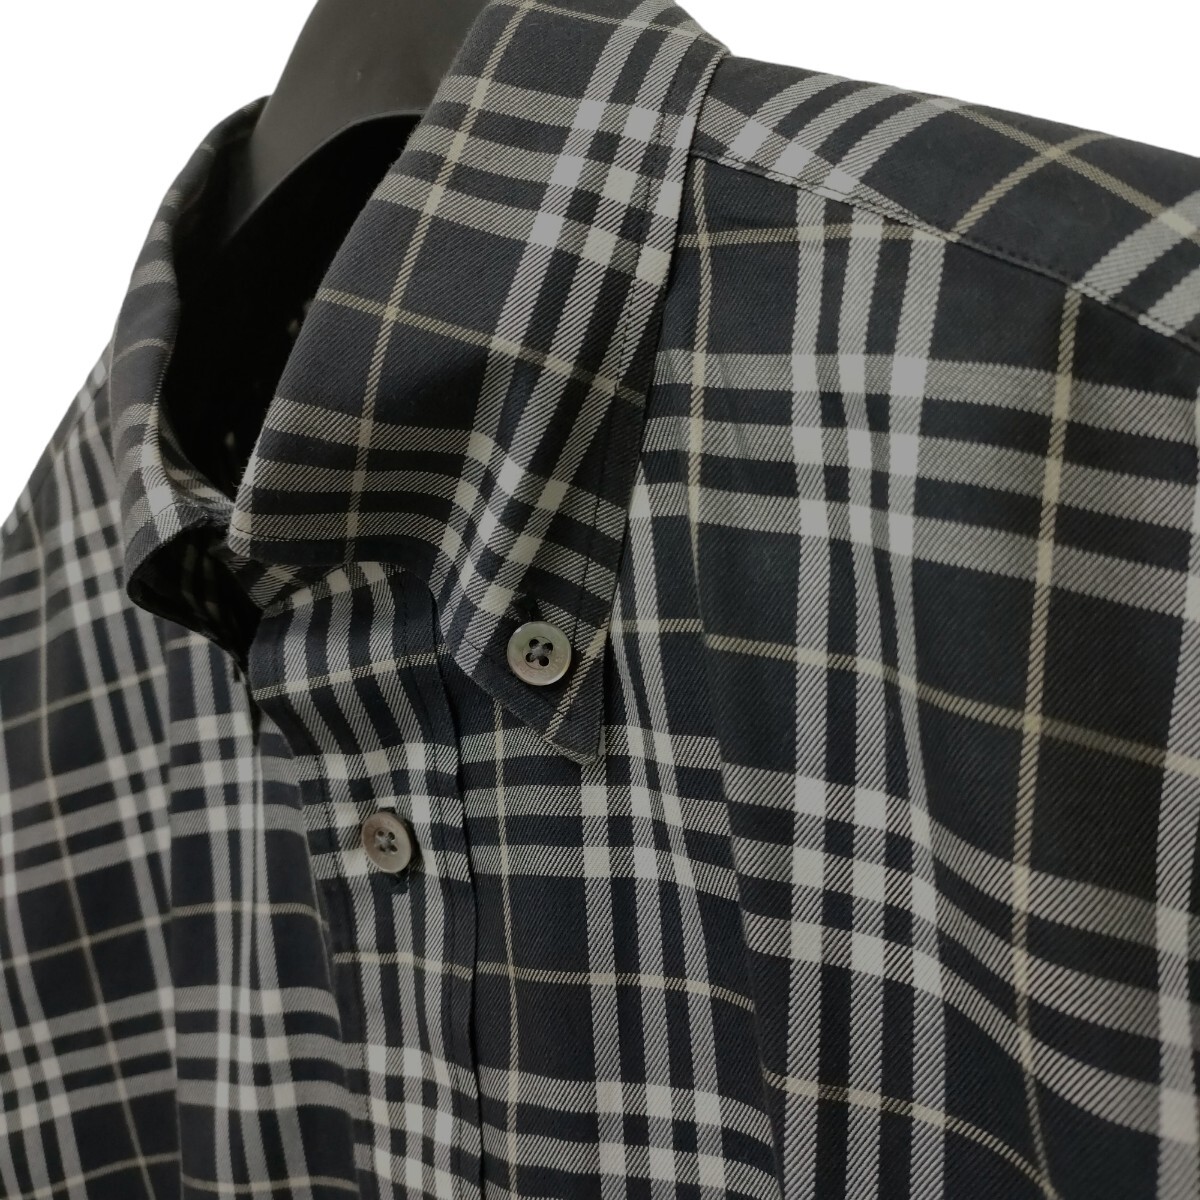 BURBERRY LONDON / Burberry мужской длинный рукав кнопка рубашка сорочка Monotone в клетку M размер сделано в Японии чистка settled I-3721